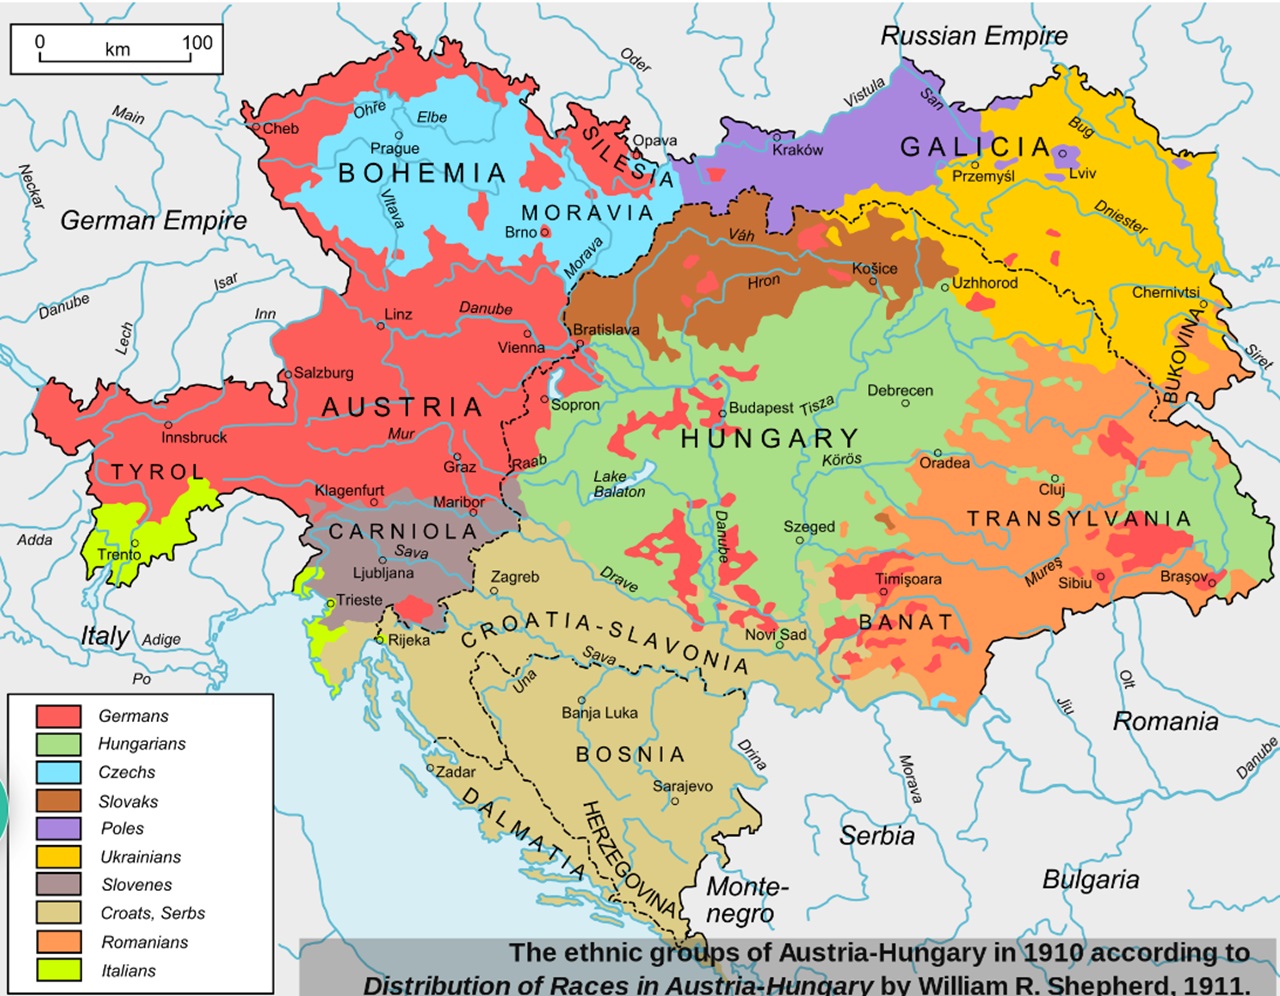 Composizione etnica Impero Austro-Ungarico, motivo alla base della mutialzione territoriale dell'Ungheria del 4 giugno 1920